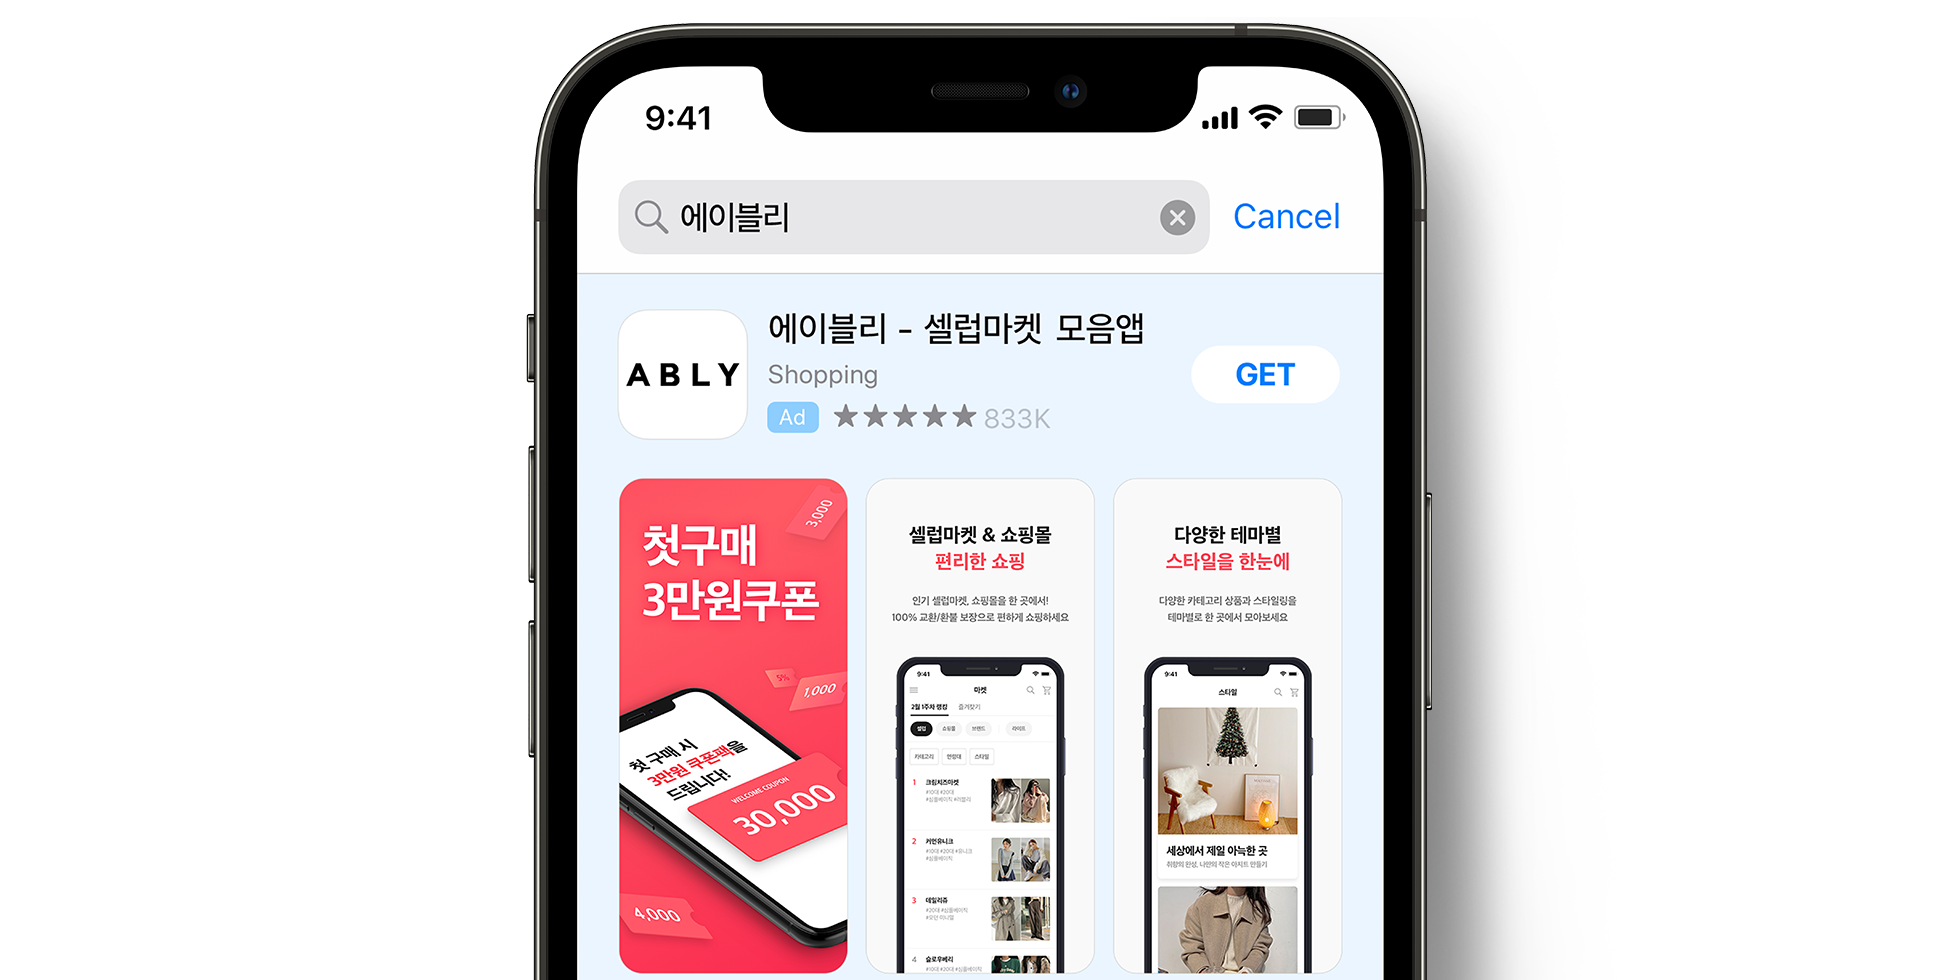 Publicité de ABLY dans l’App Store